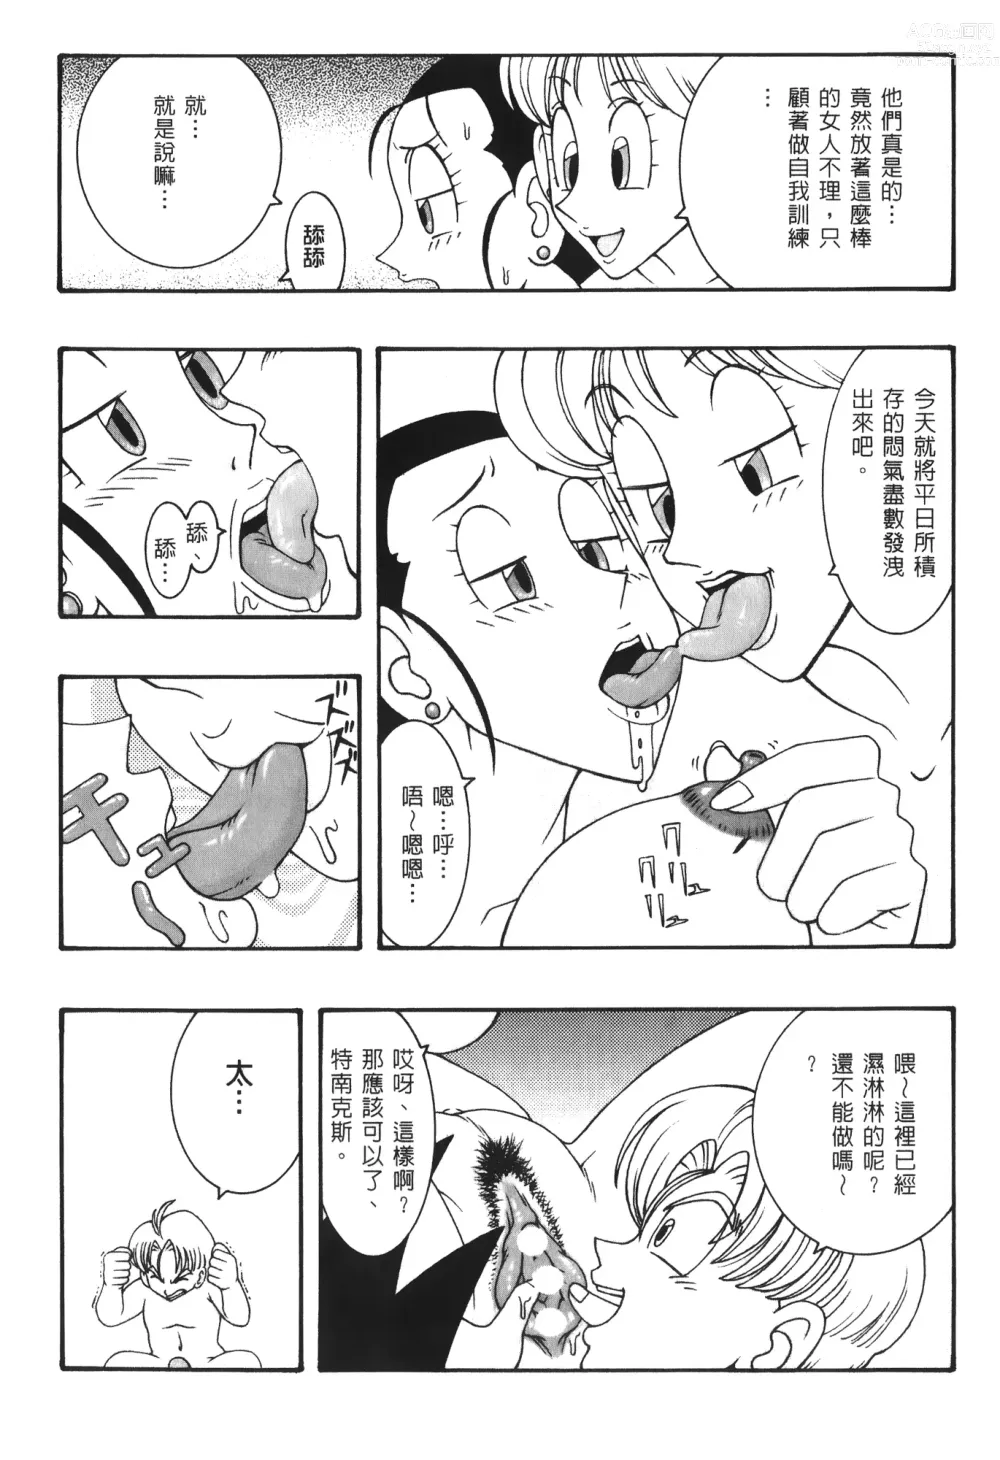 Page 11 of doujinshi ドラゴンパール 03